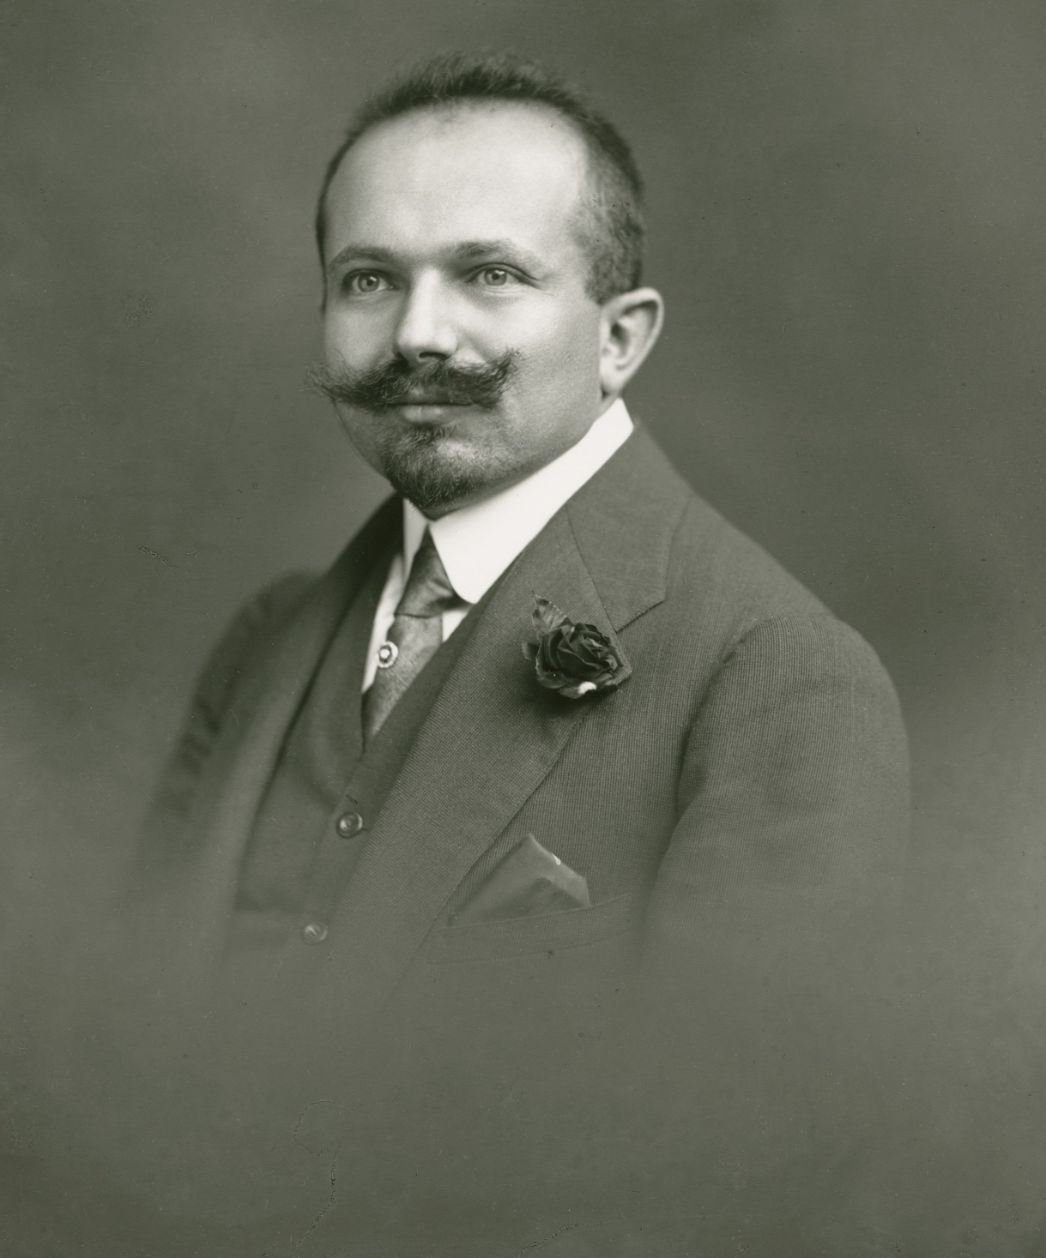 Portrait photograph of Jindrich Waldes